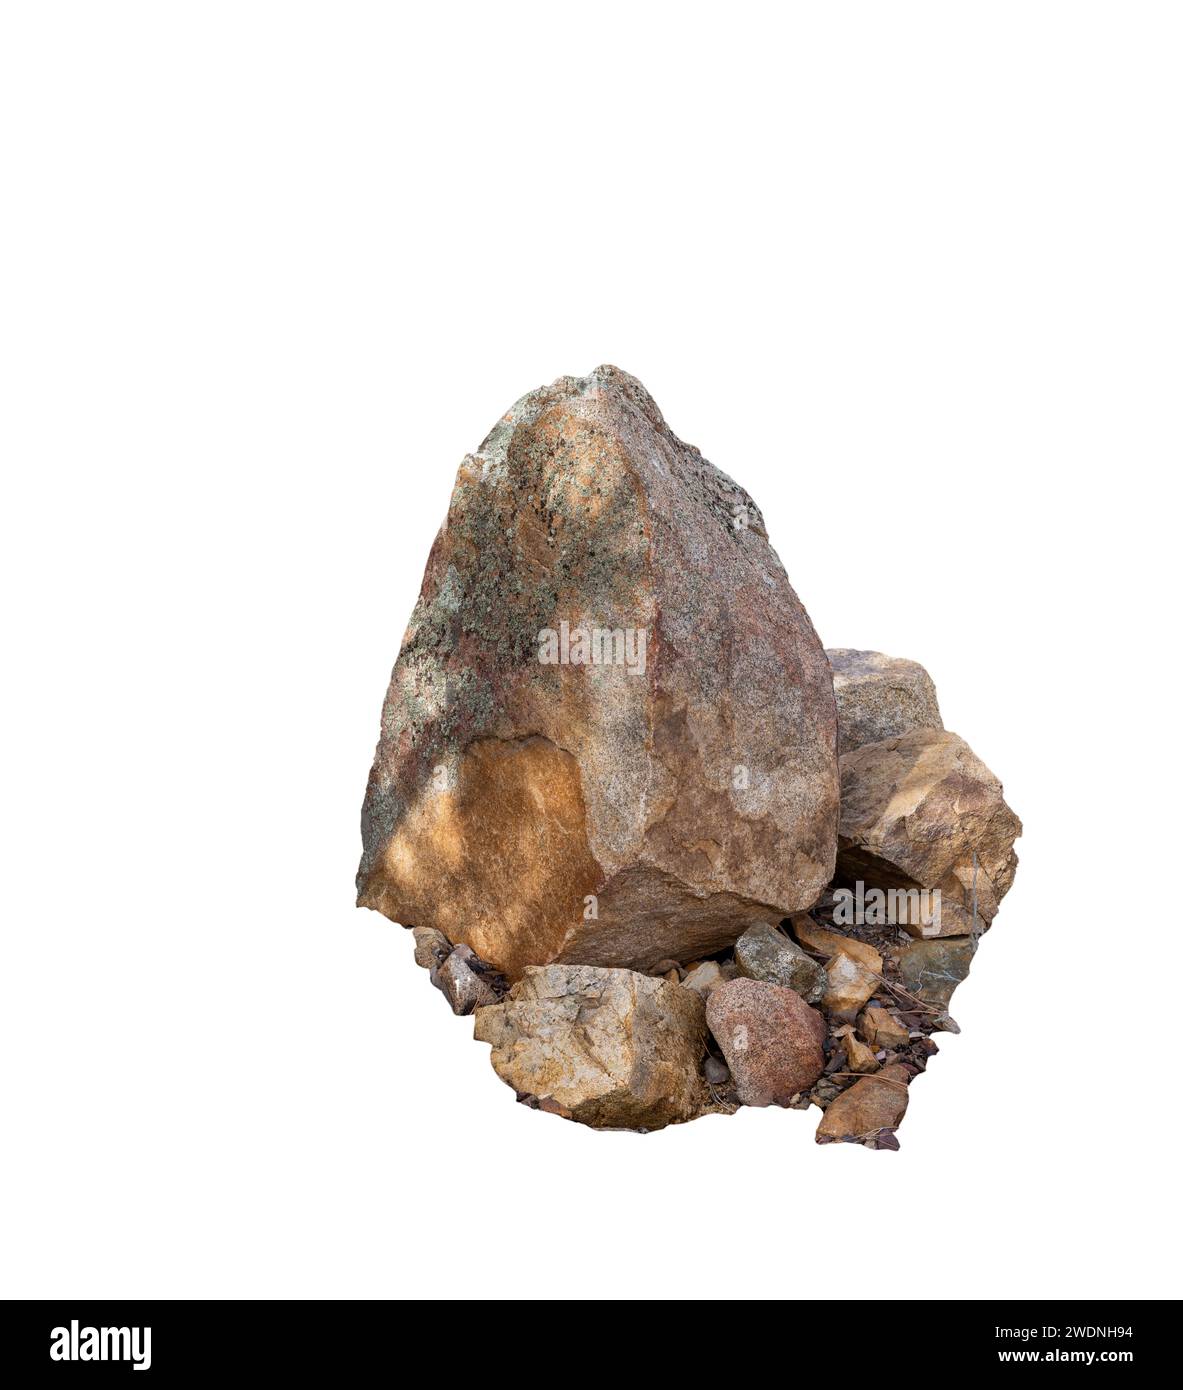 Gruppierung von Felsen und Felsbrocken mit unterschiedlichen Farben, Texturen und Größen Stockfoto